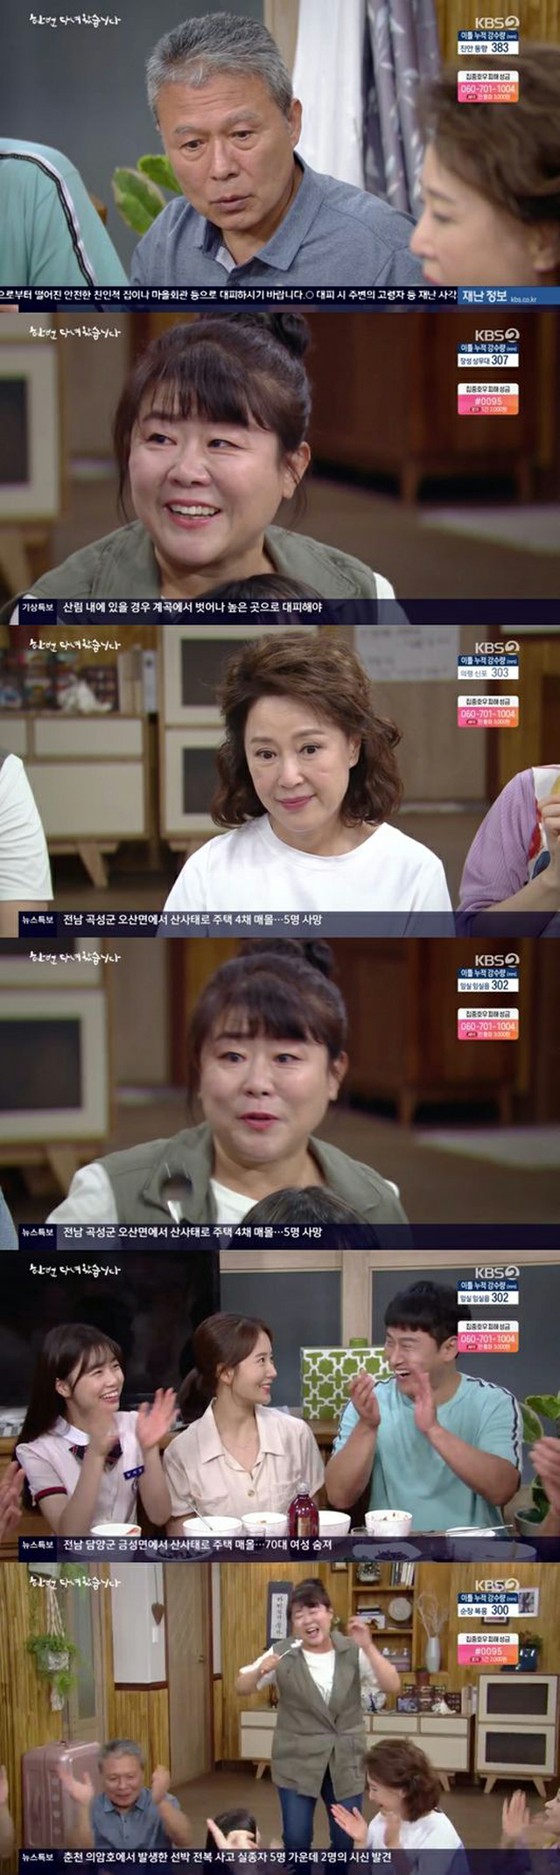 Serial TV "Aku pernah ke sana" Lee Jung Eun, menangis untuk menyambut anggota keluarga "Hari ini adalah hari terbaik dalam hidupku"